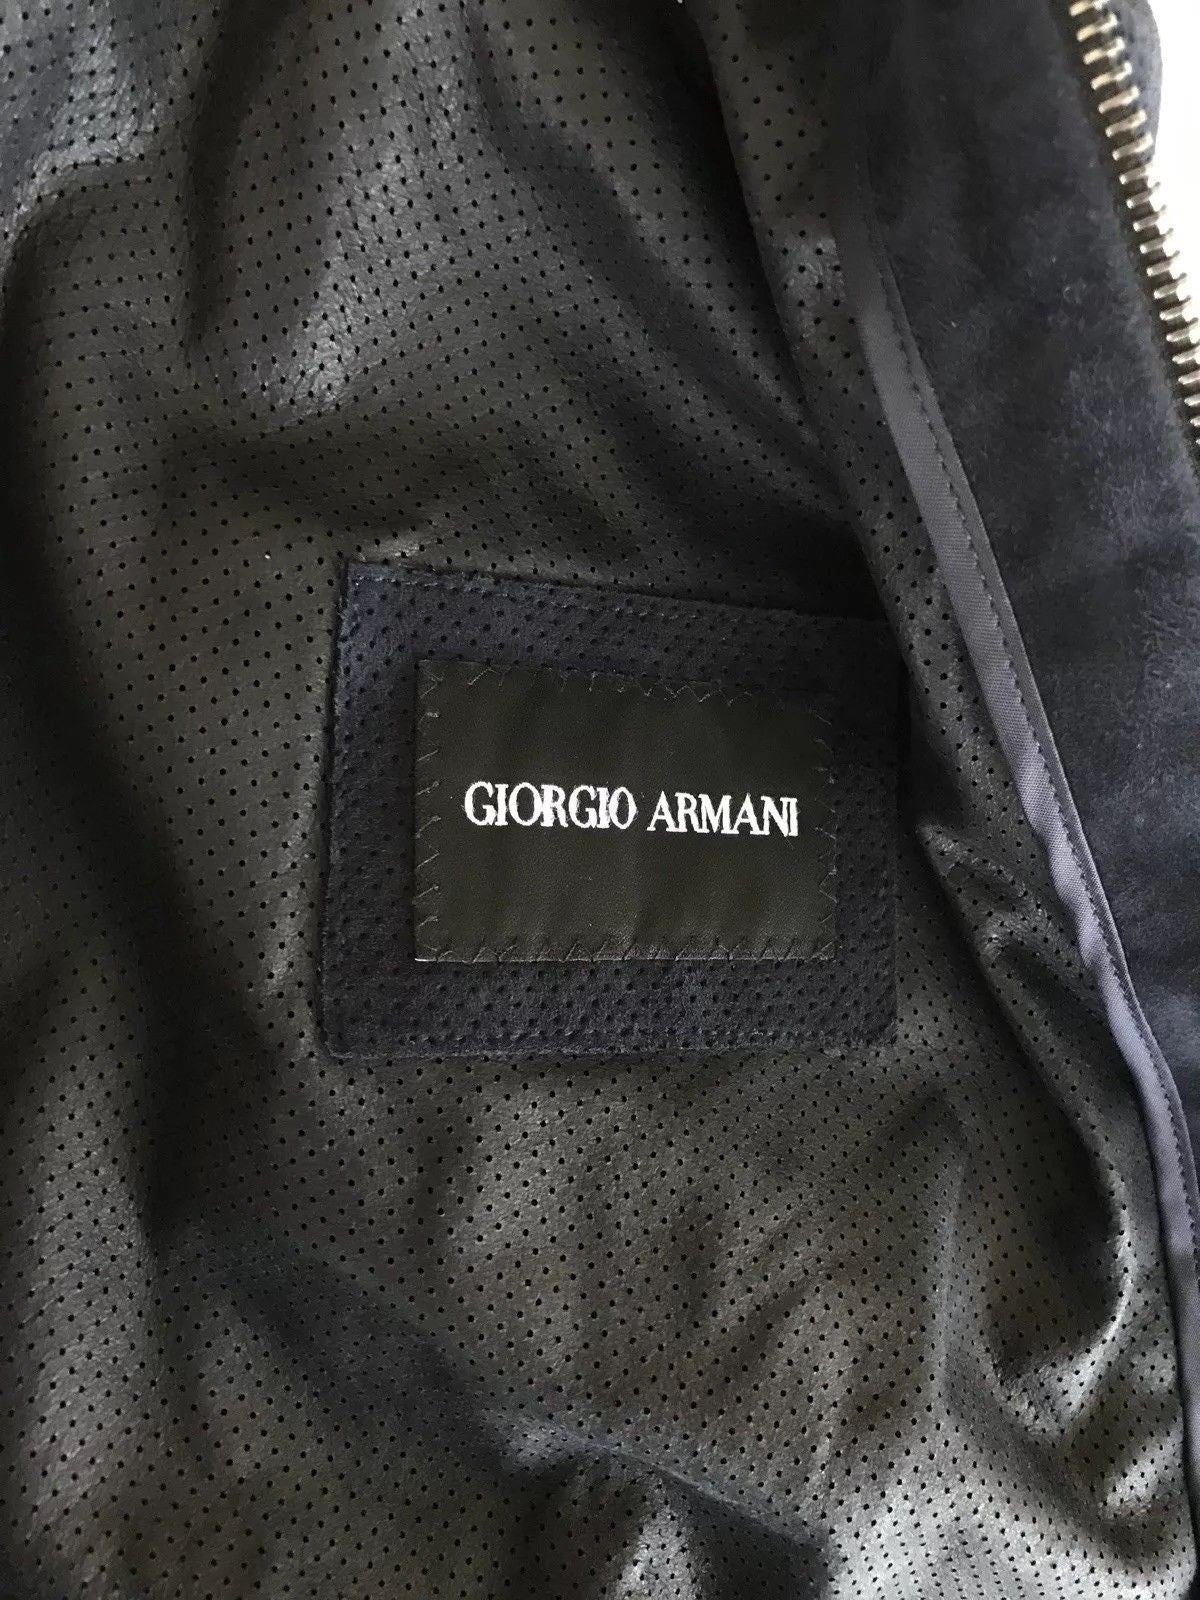 giorgio armani men's jackets